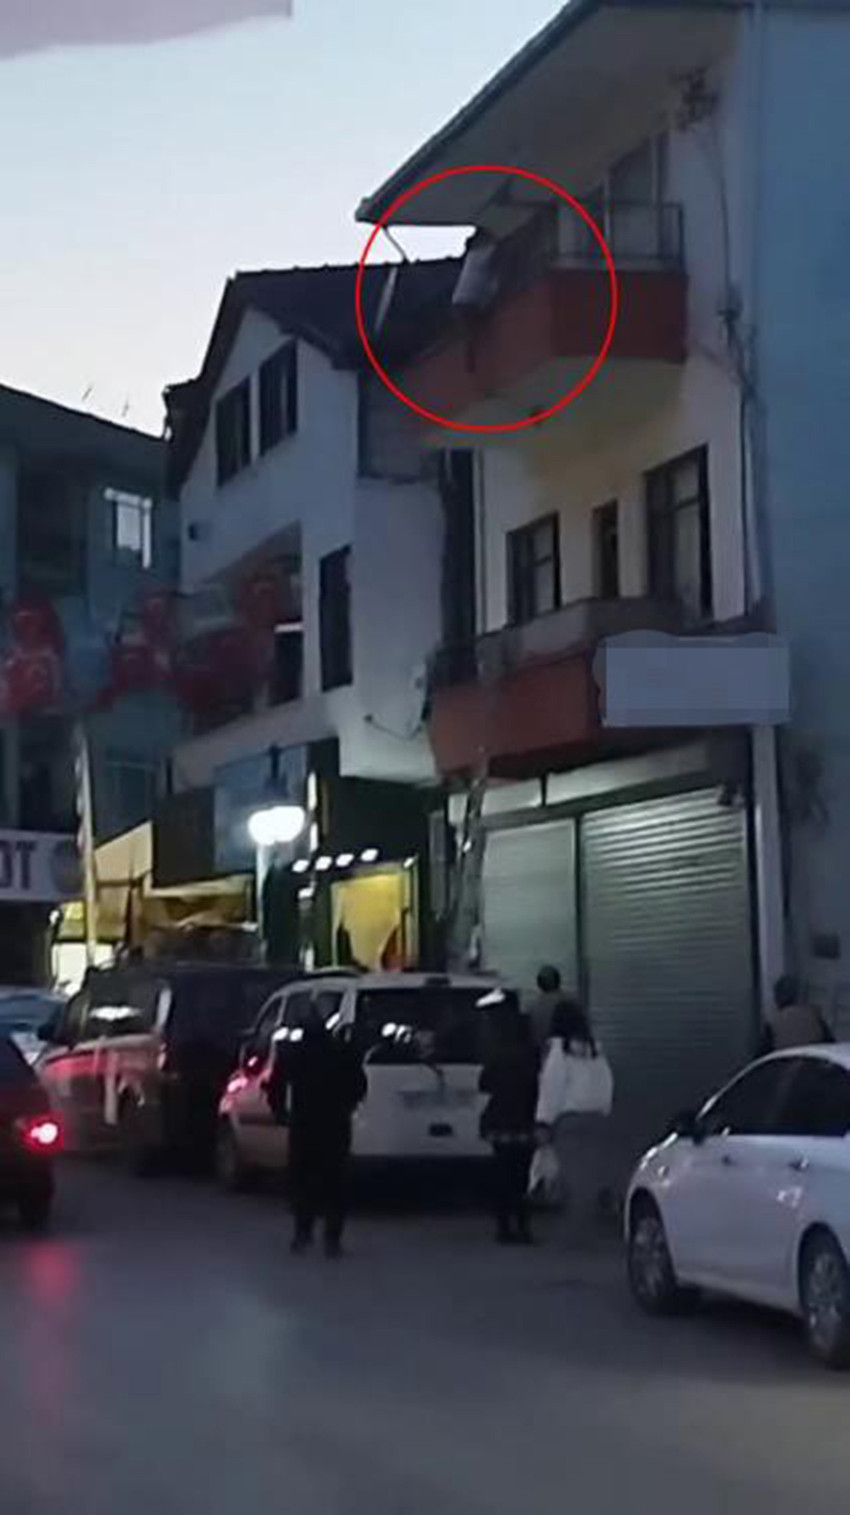 Sakarya’da özel gereksinimli bir kadın, ikinci katın balkonundan düşerek yaralandı. Yaşanan korku dolu anlar saniye saniye cep telefonu kamerasına yansıdı.